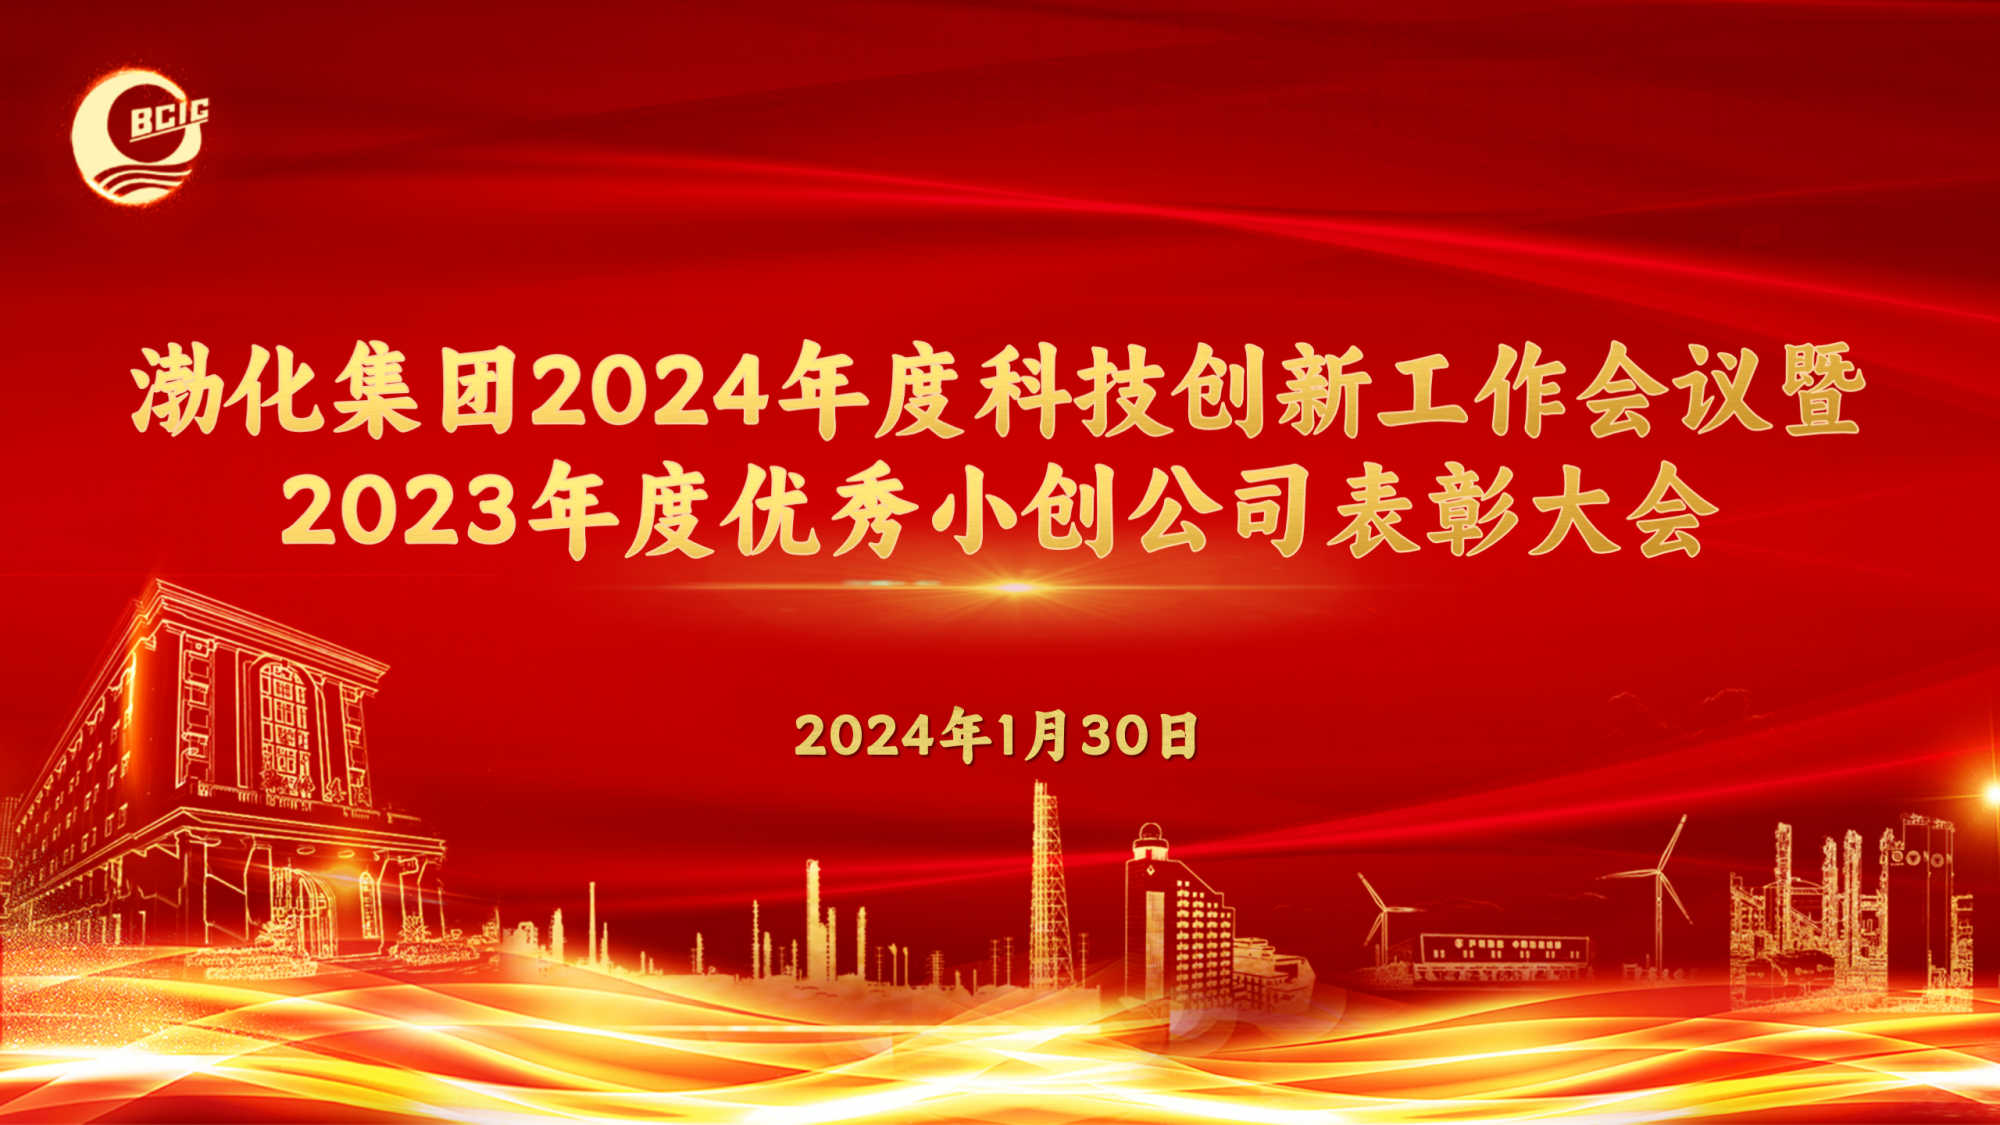 渤化集团召开2024年度科技创新工作会议暨2023年度优秀小创公司表彰大会